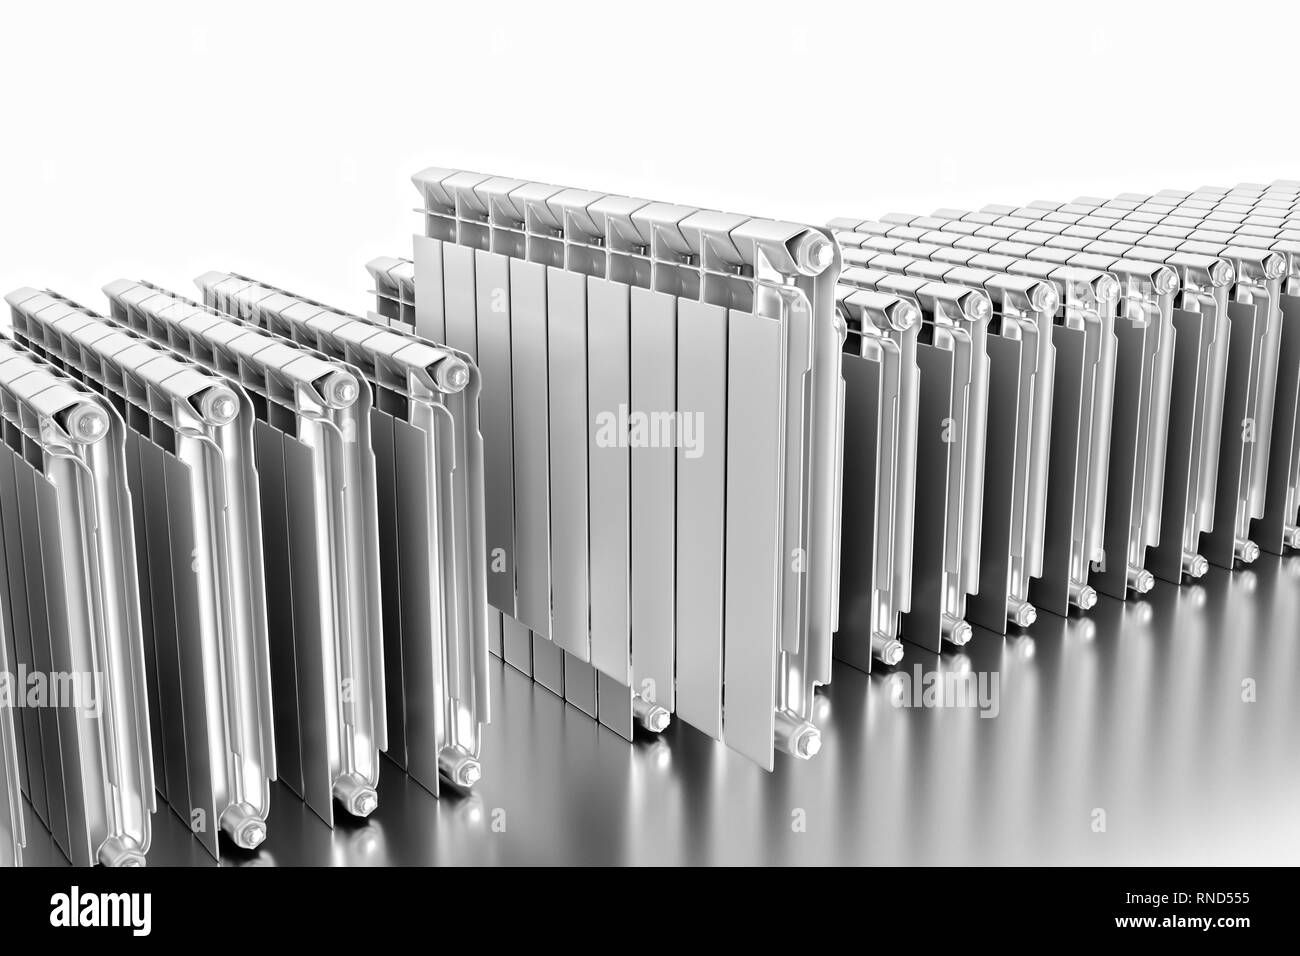 Le rendu 3D. Radiateurs de chauffage central avec de nombreuses sections. Banque D'Images